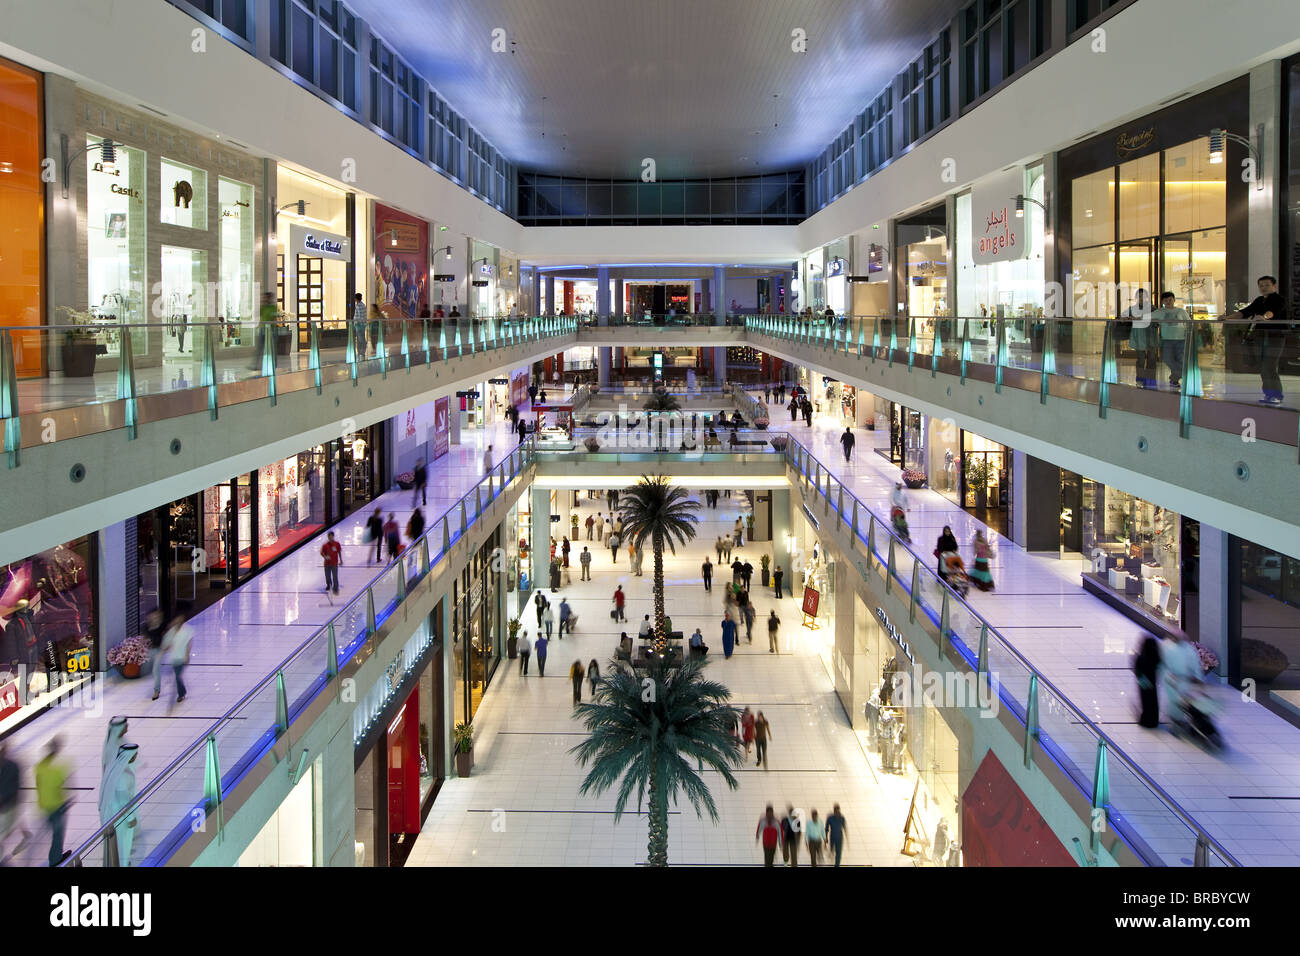 Dubai Mall, il centro commerciale più grande del mondo con 1200 negozi, parte del Burj Khalifa complessa, Dubai, Emirati arabi uniti Foto Stock